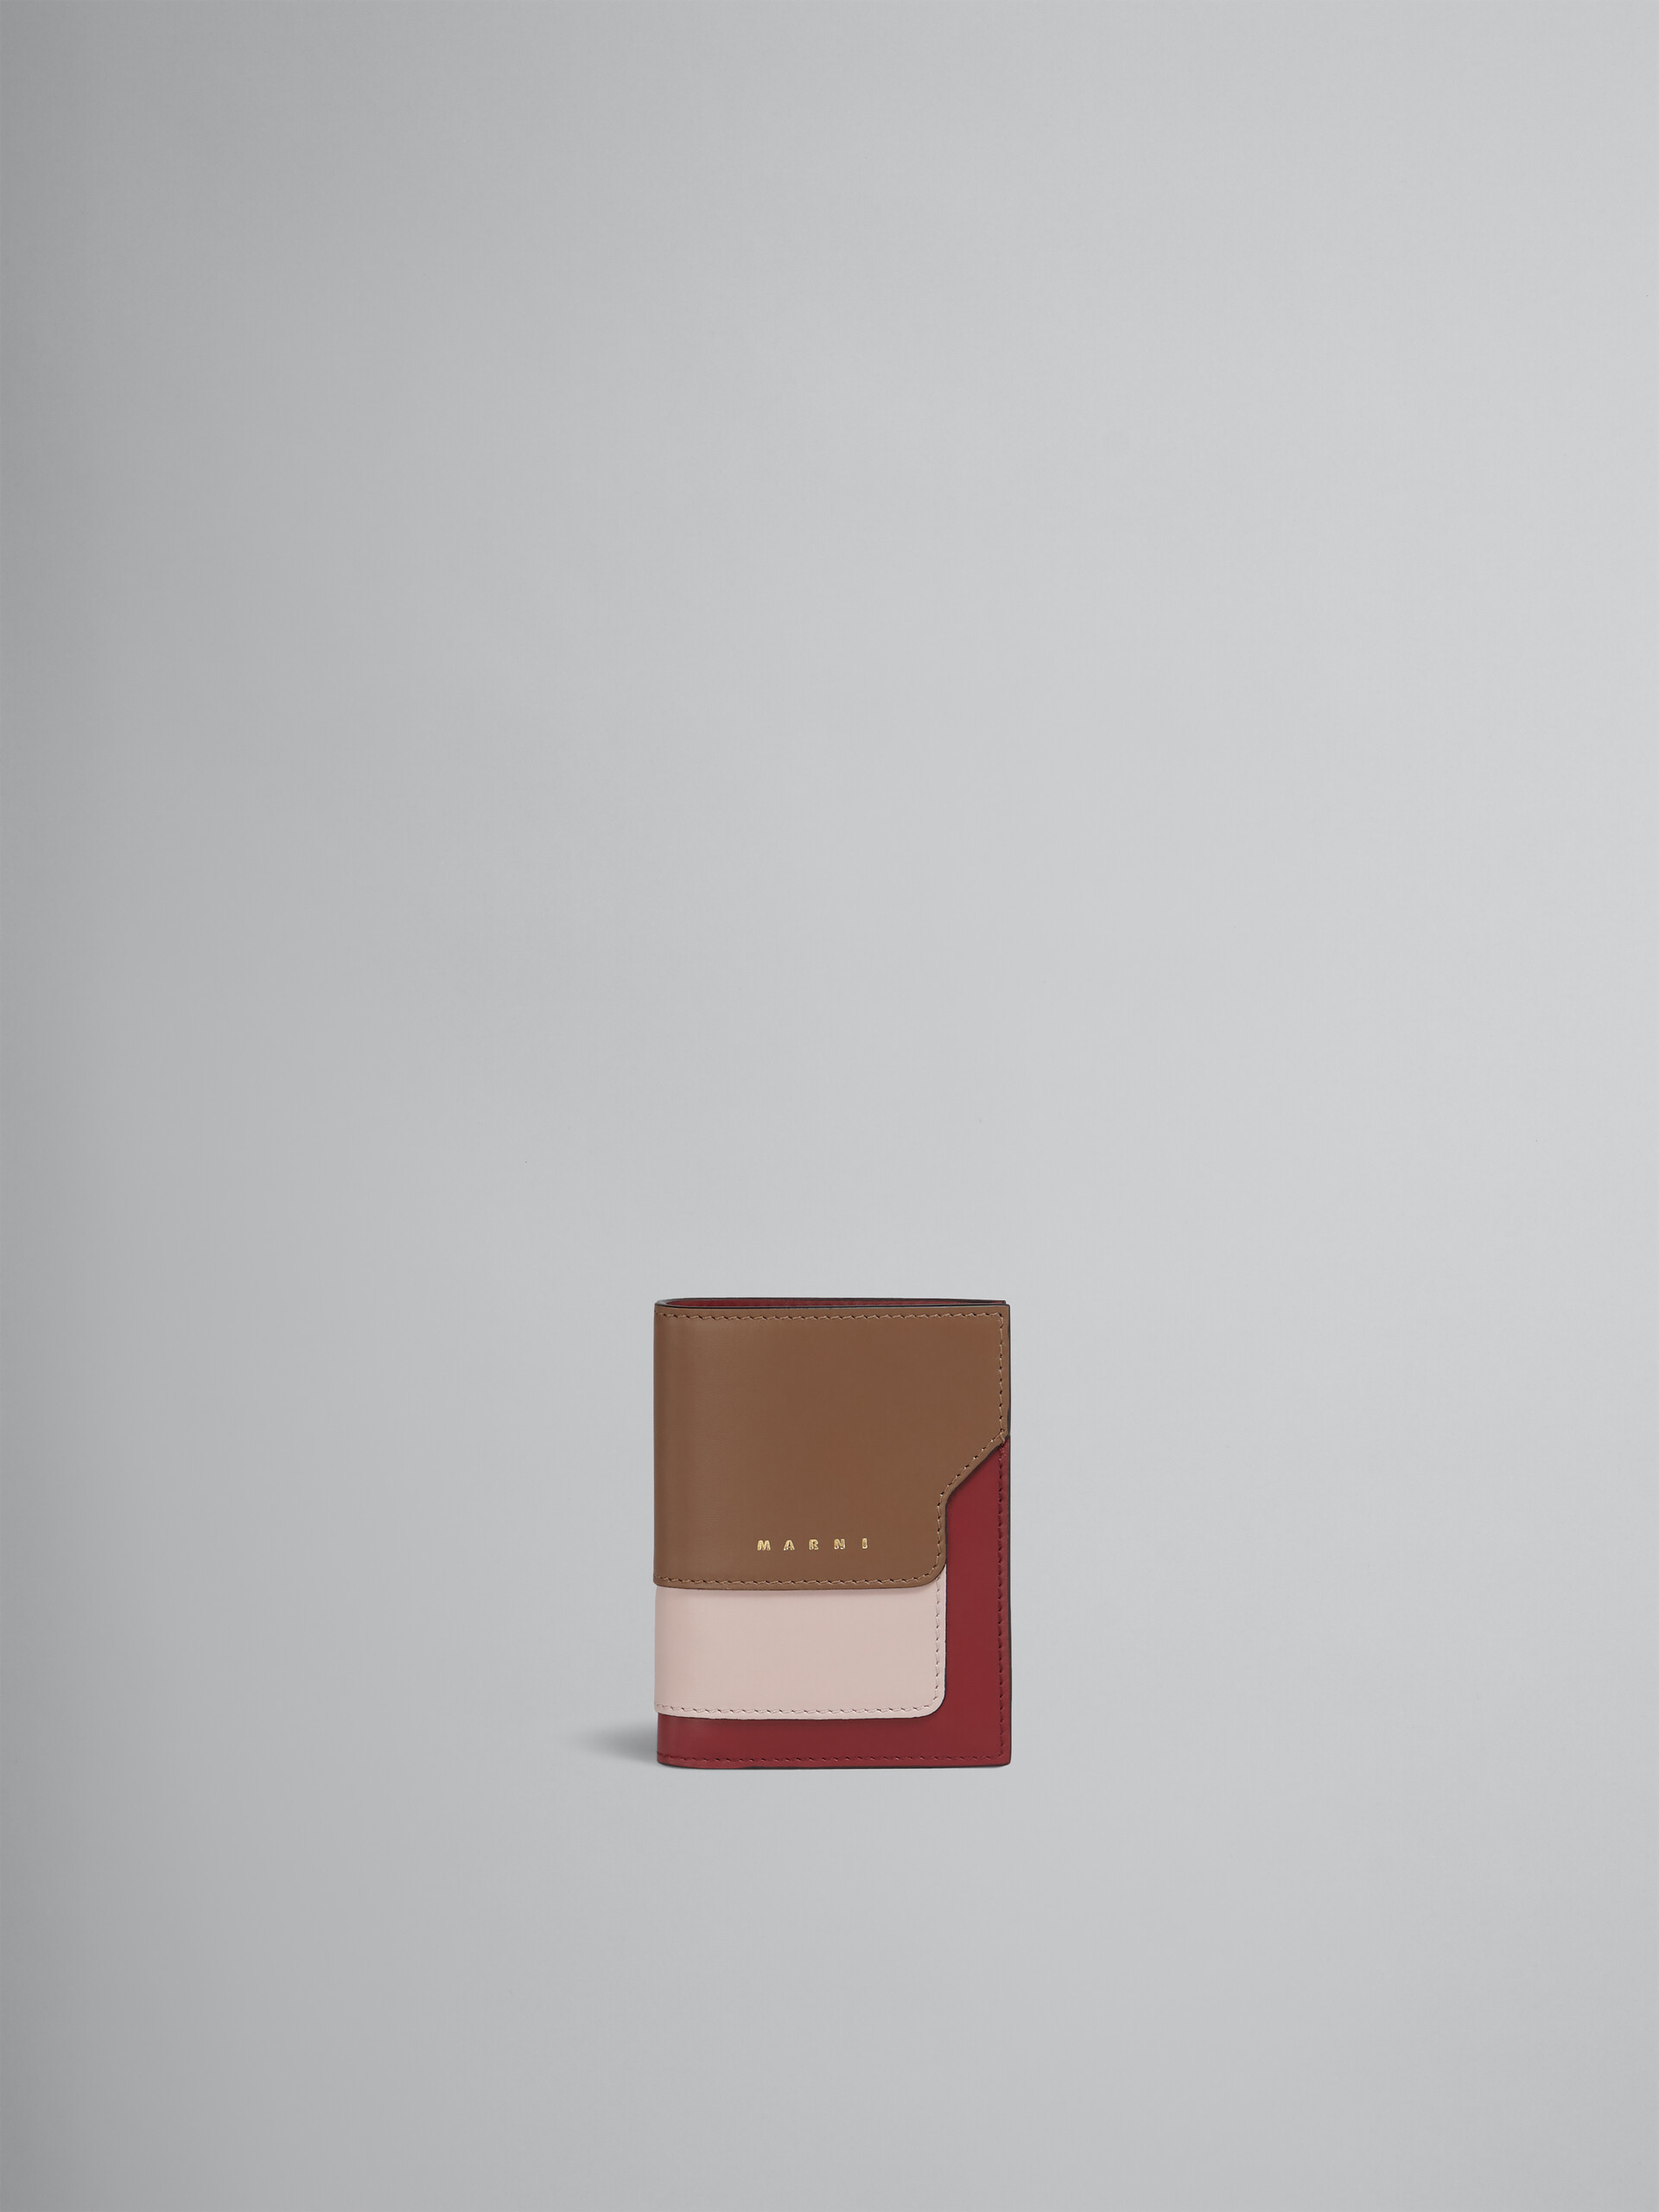 Faltbrieftasche aus braun-pinkem und burgunderrotem Leder - Brieftaschen - Image 1